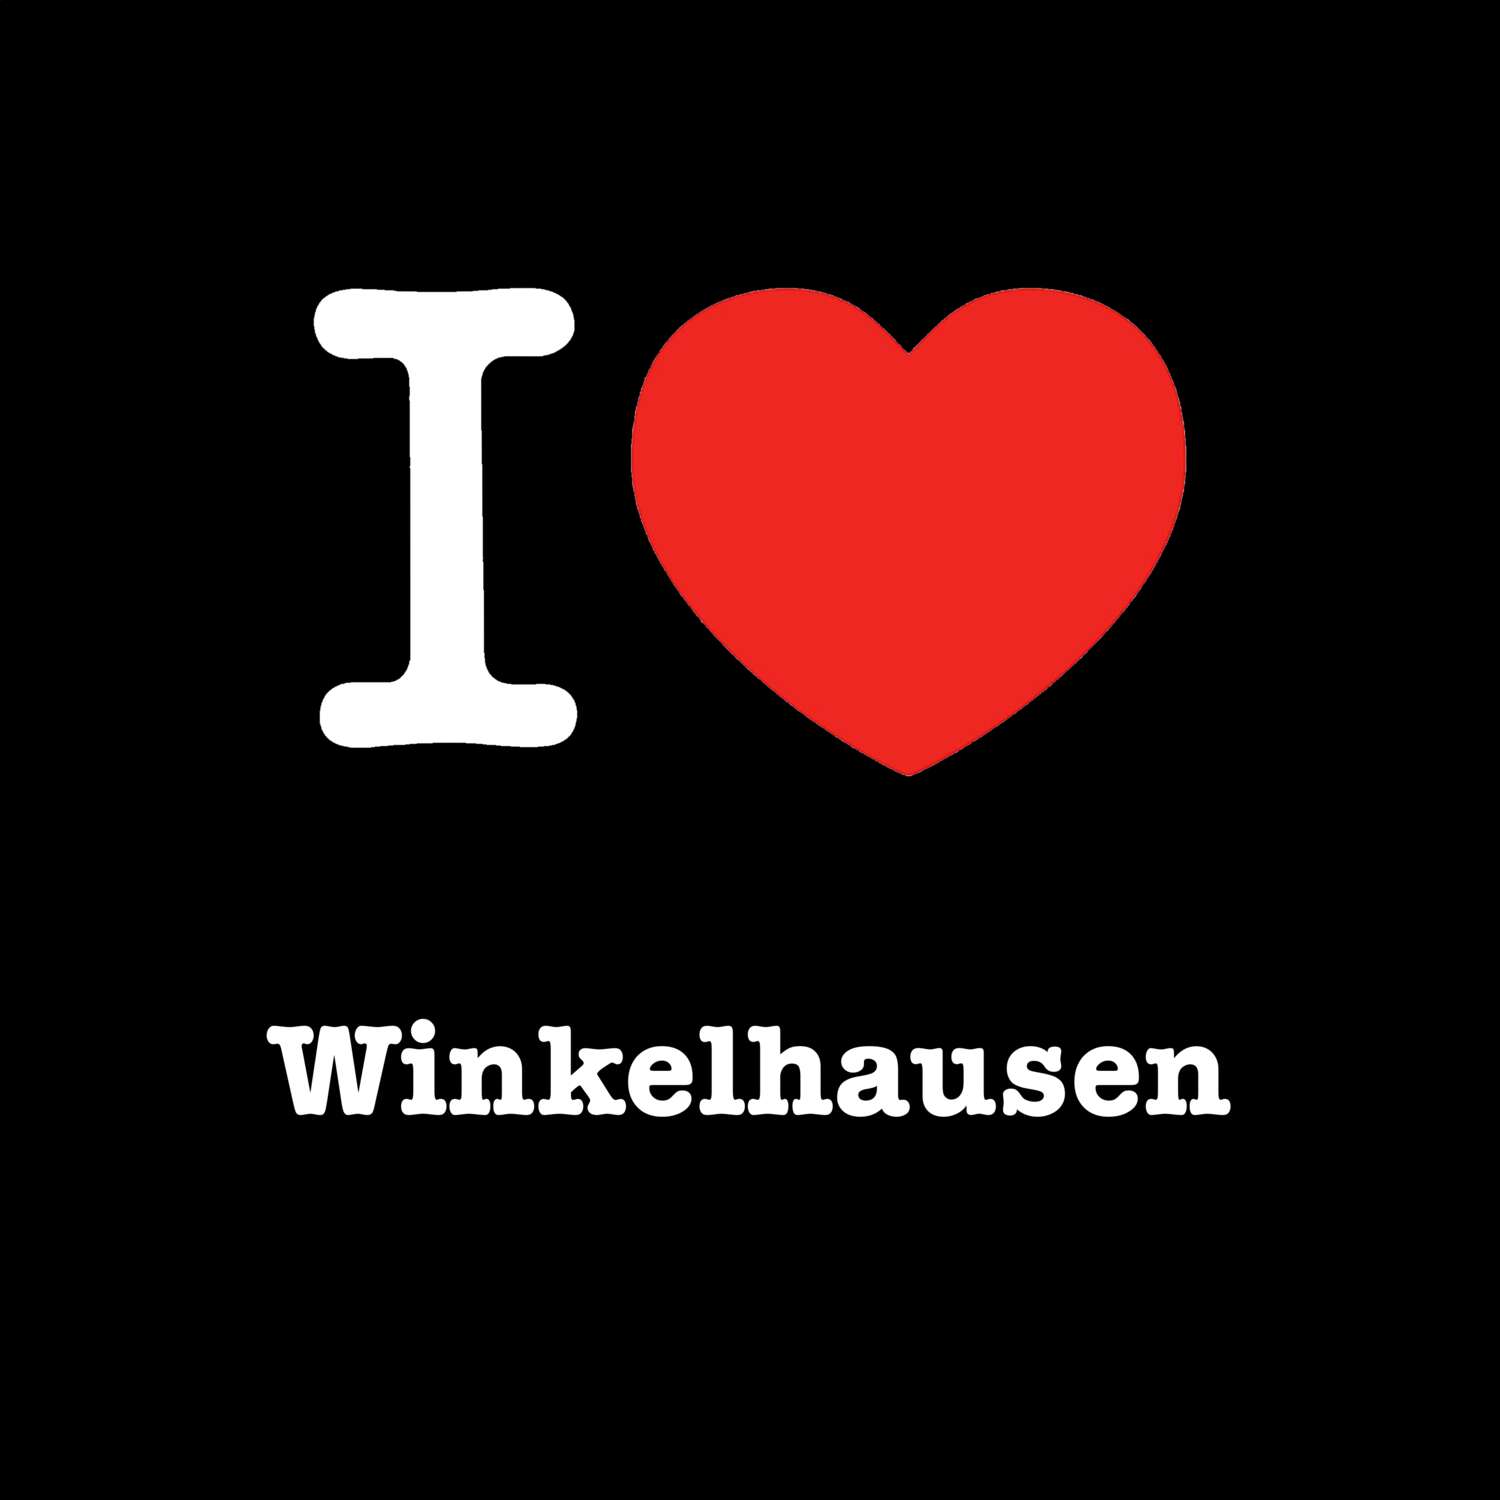 Winkelhausen T-Shirt »I love«